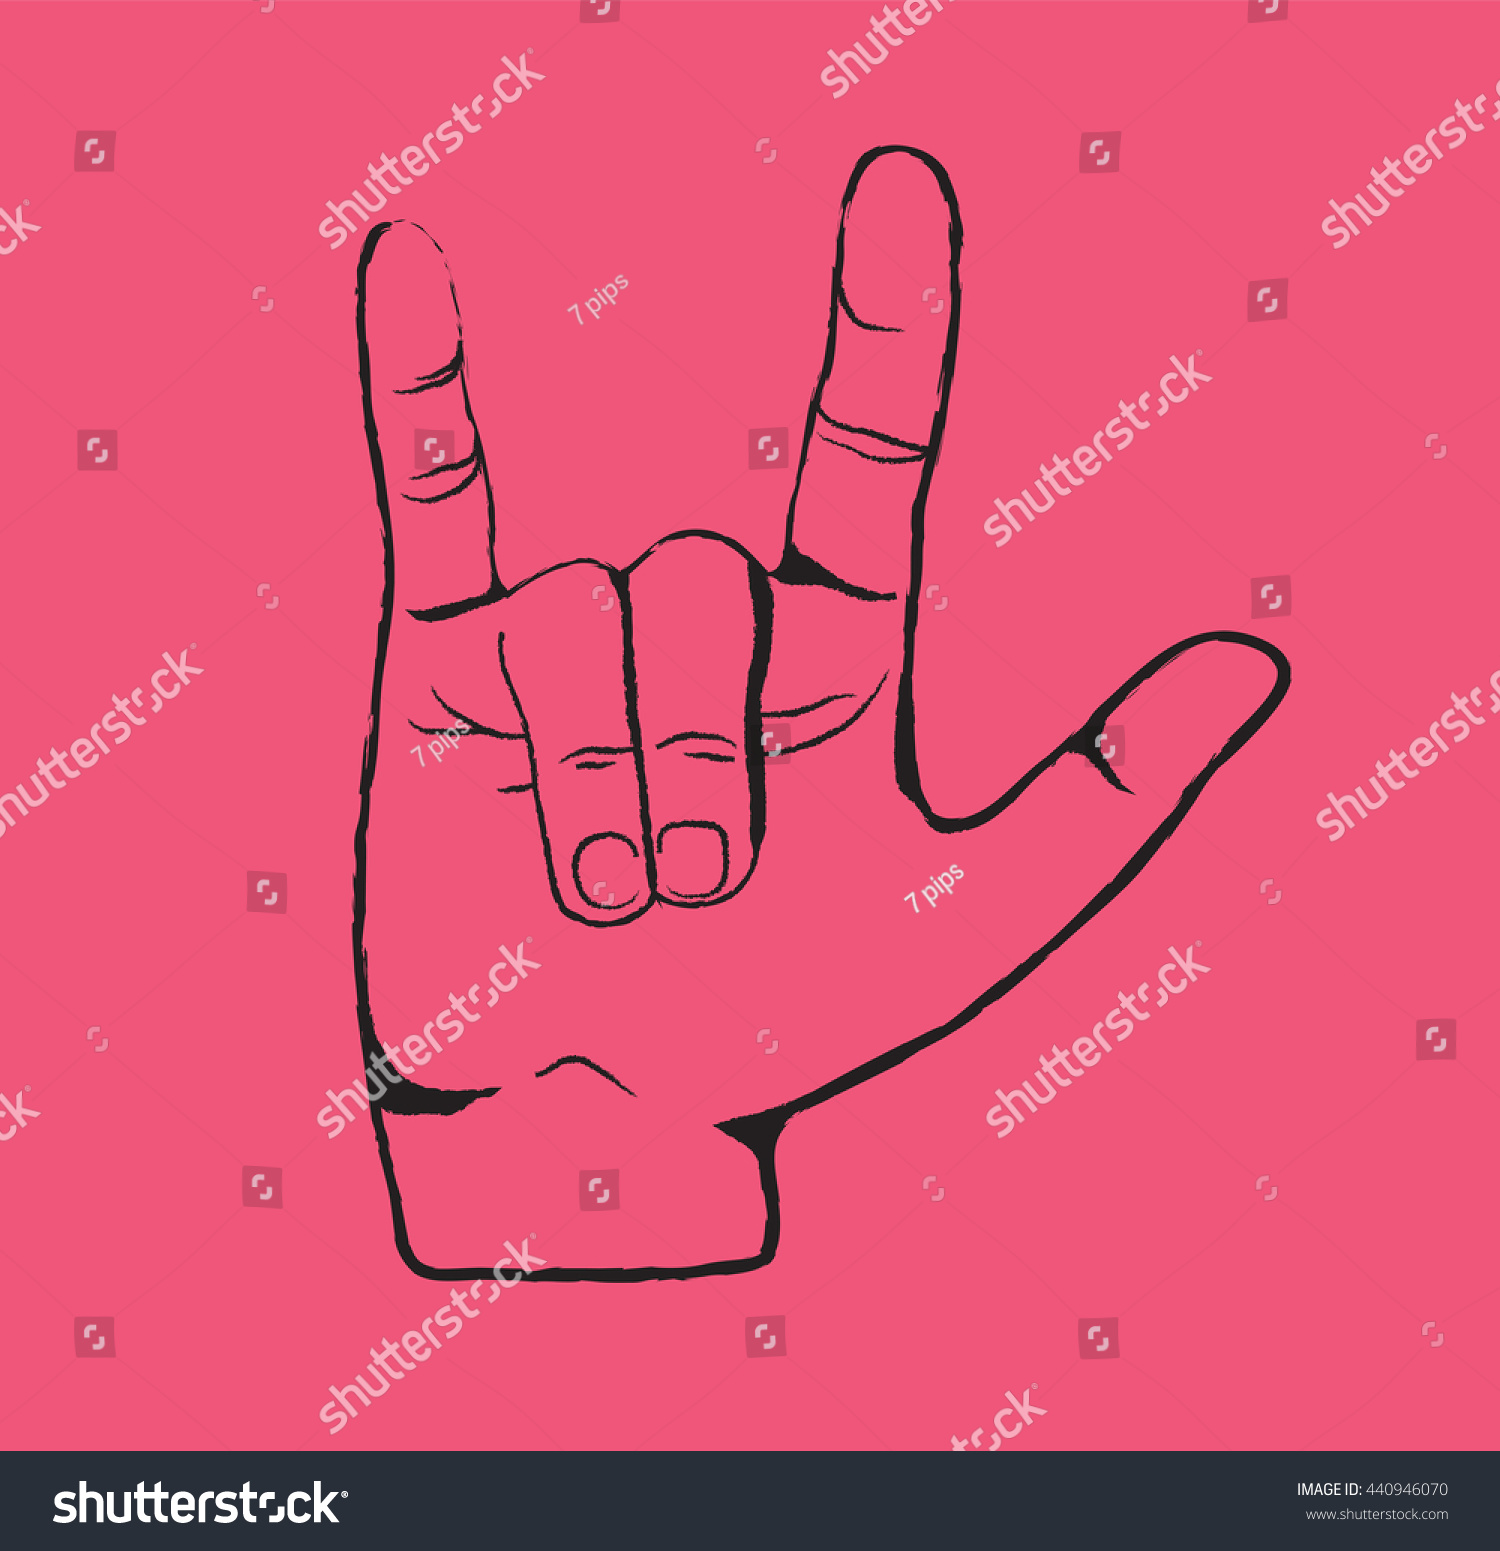 Hands Love Sign Vector Stock Vector 440946070 - Shutterstock